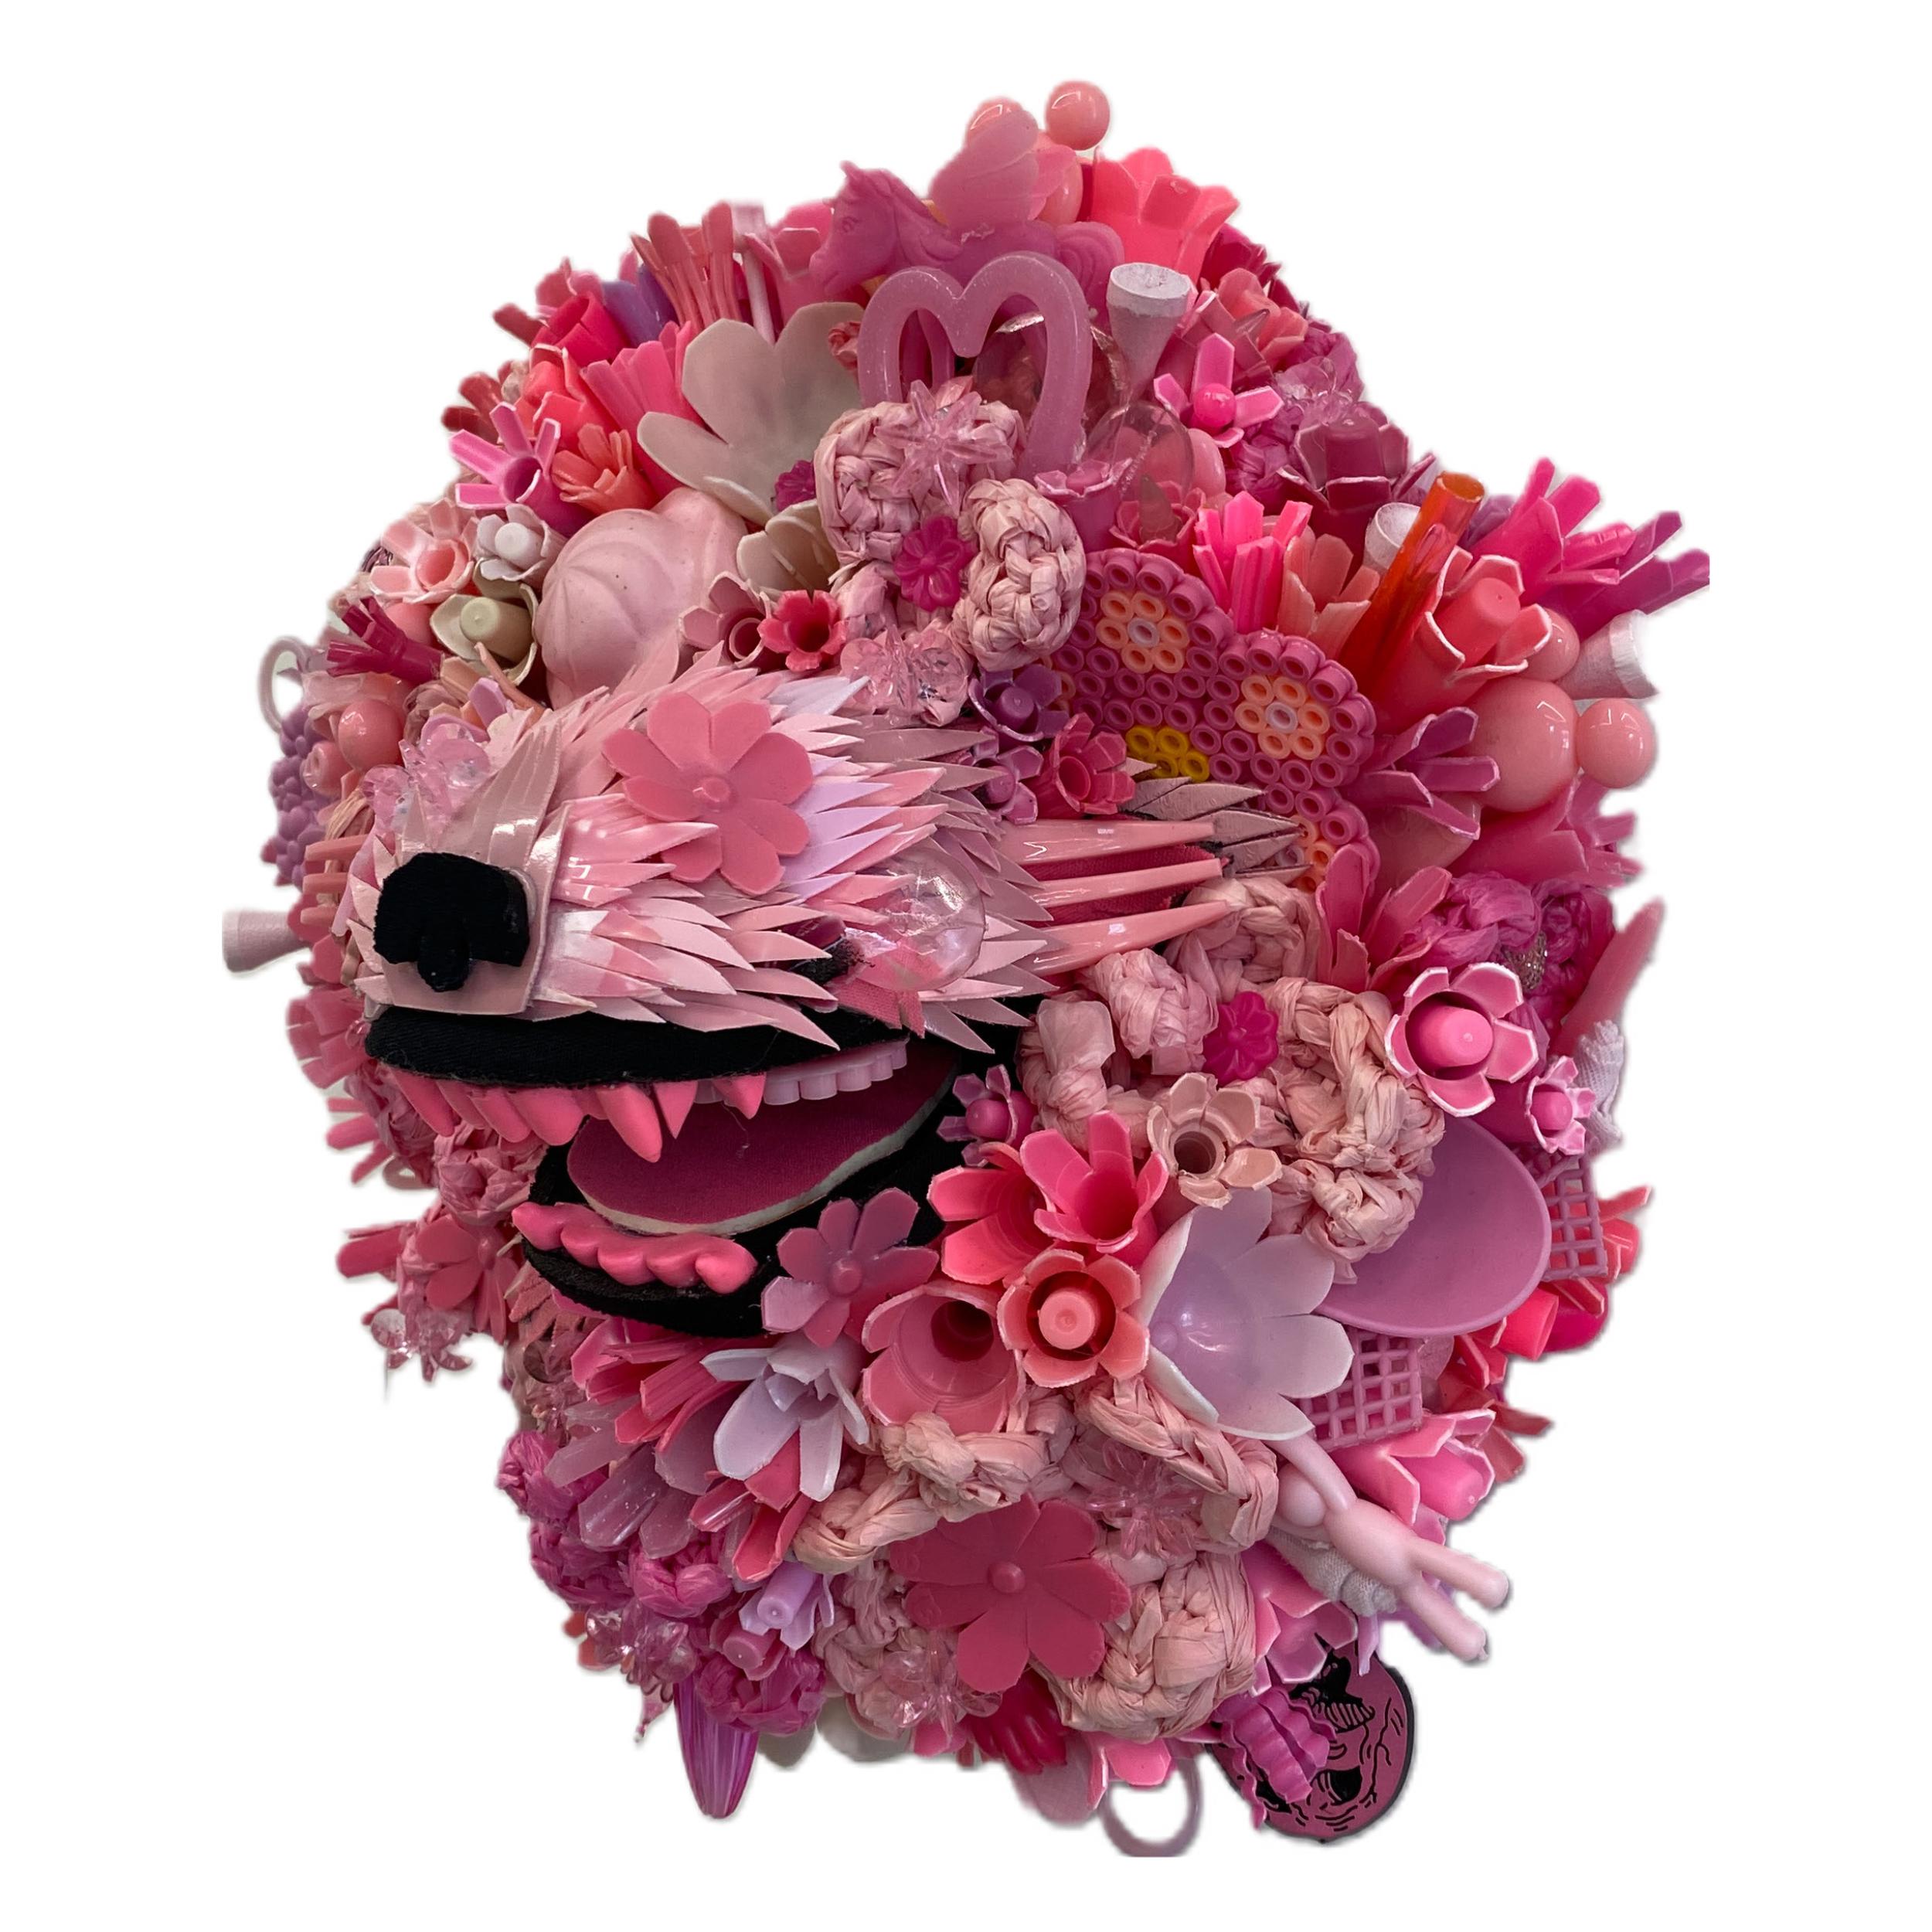 Hydrangea-Hunde, Blush, zeitgenössische Tierskulptur, recycelte Materialien  – Sculpture von Calder Kamin